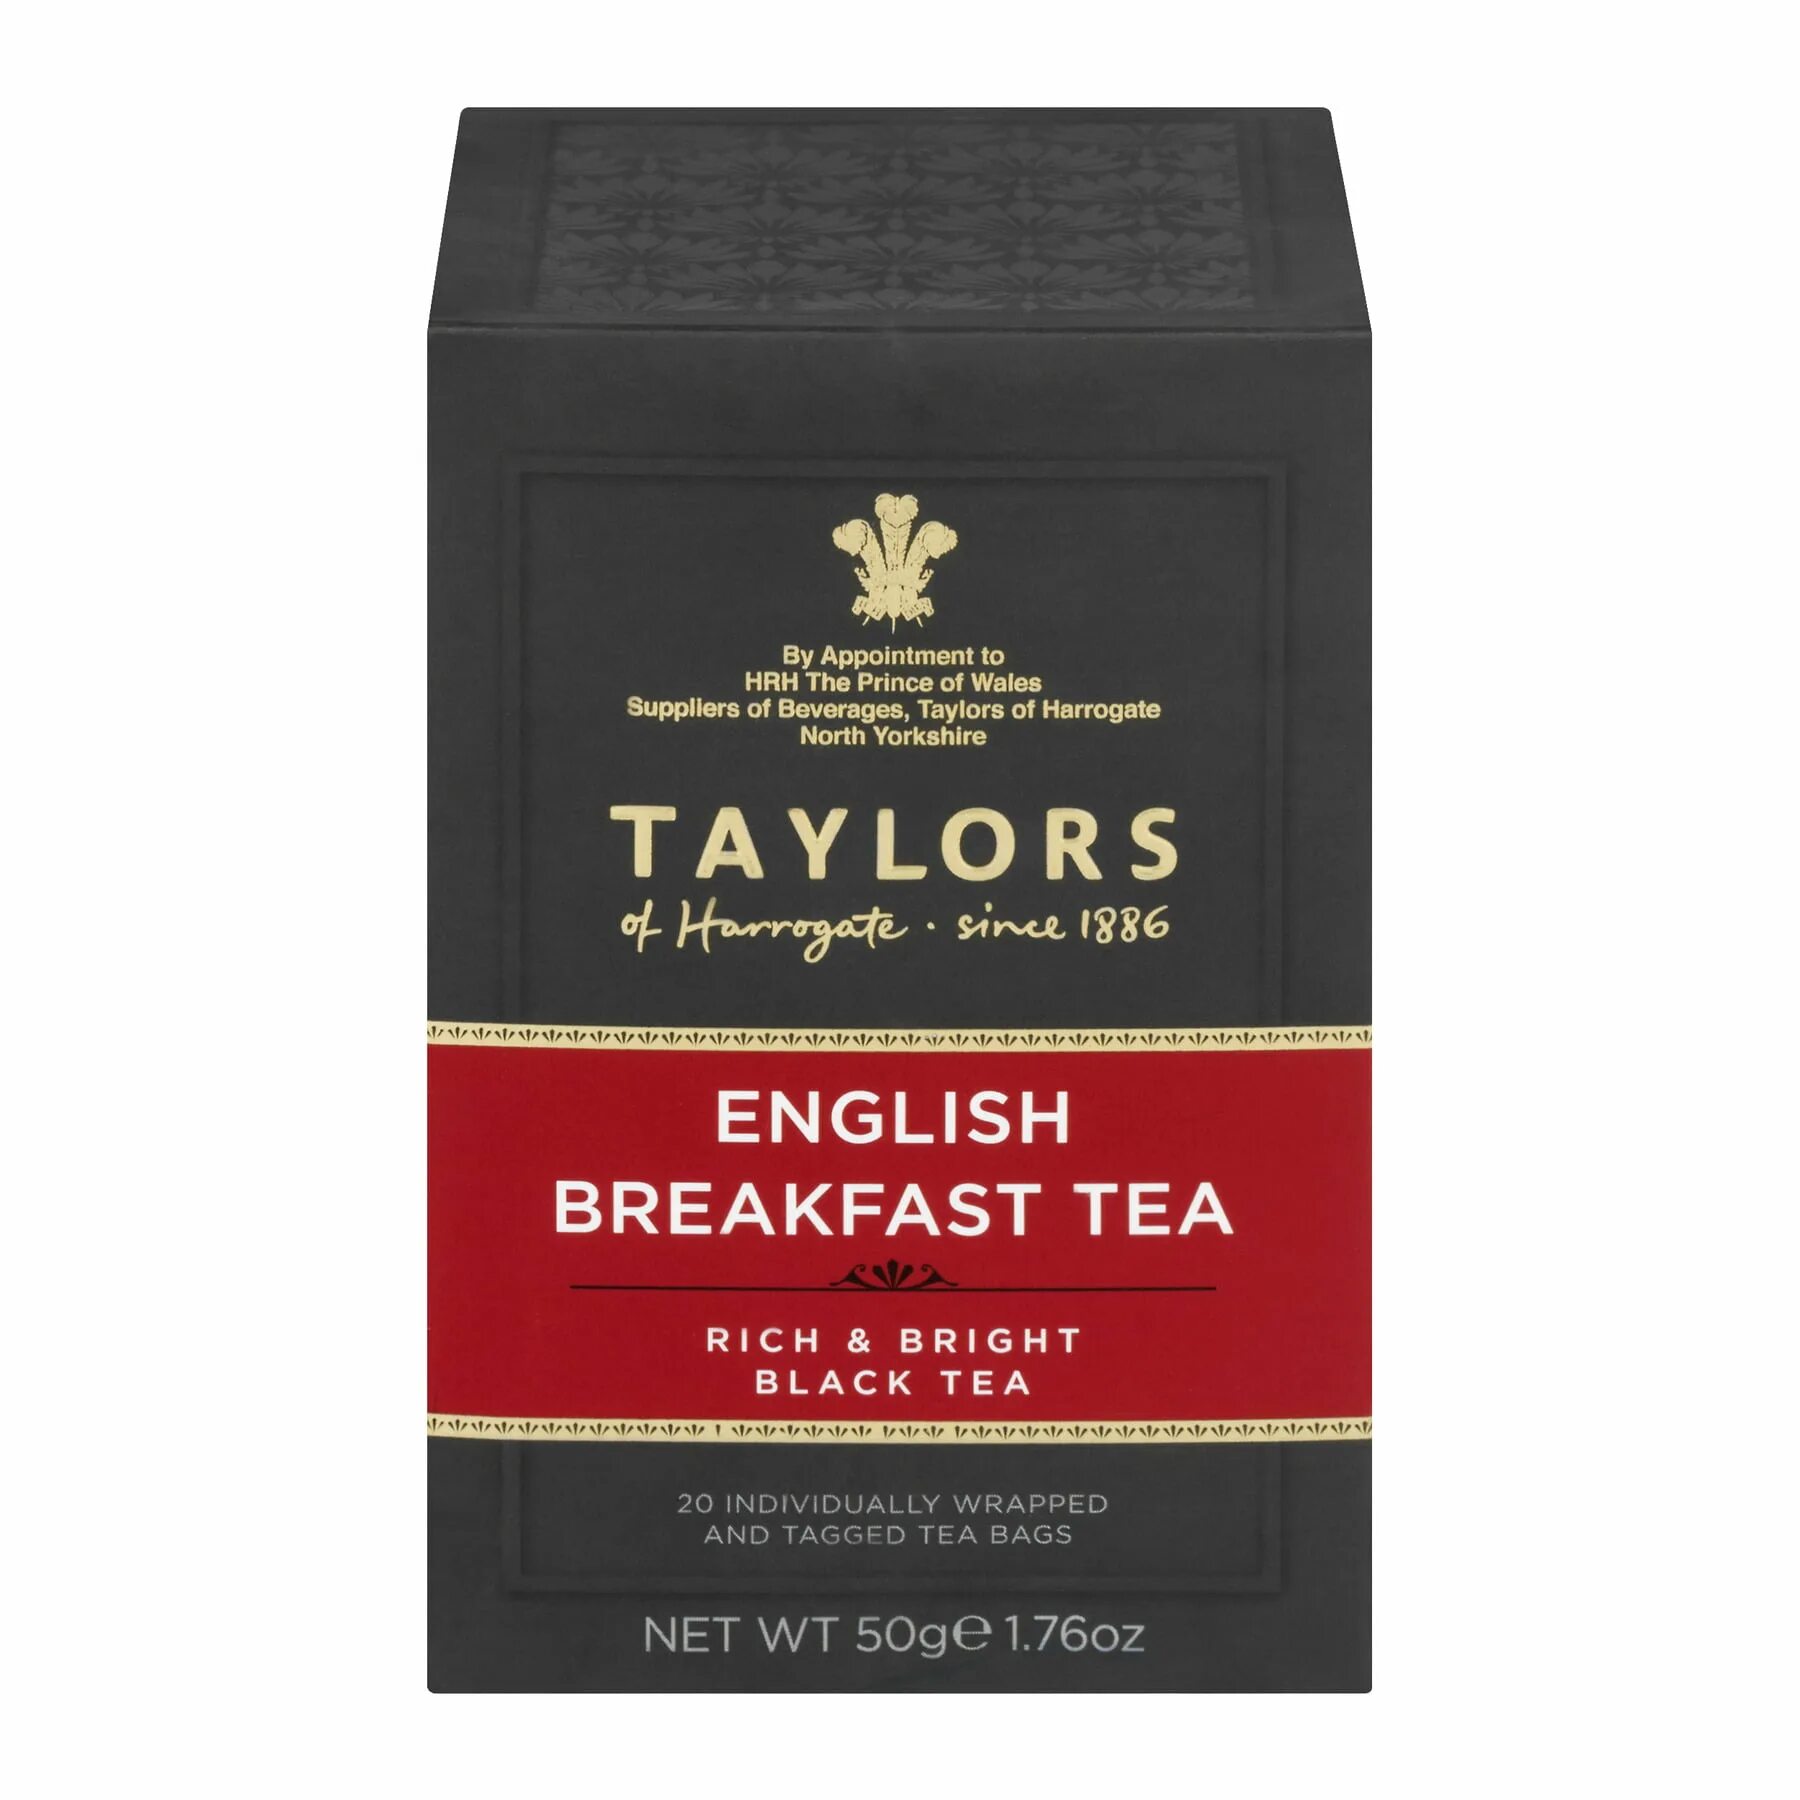 Купить английский завтрак. Чай черный English Breakfast 100 гр. Чай чёрный English Breakfast Special Tea Tea collection. Taylor чай английский завтрак. English Breakfast чай в пакетиках.